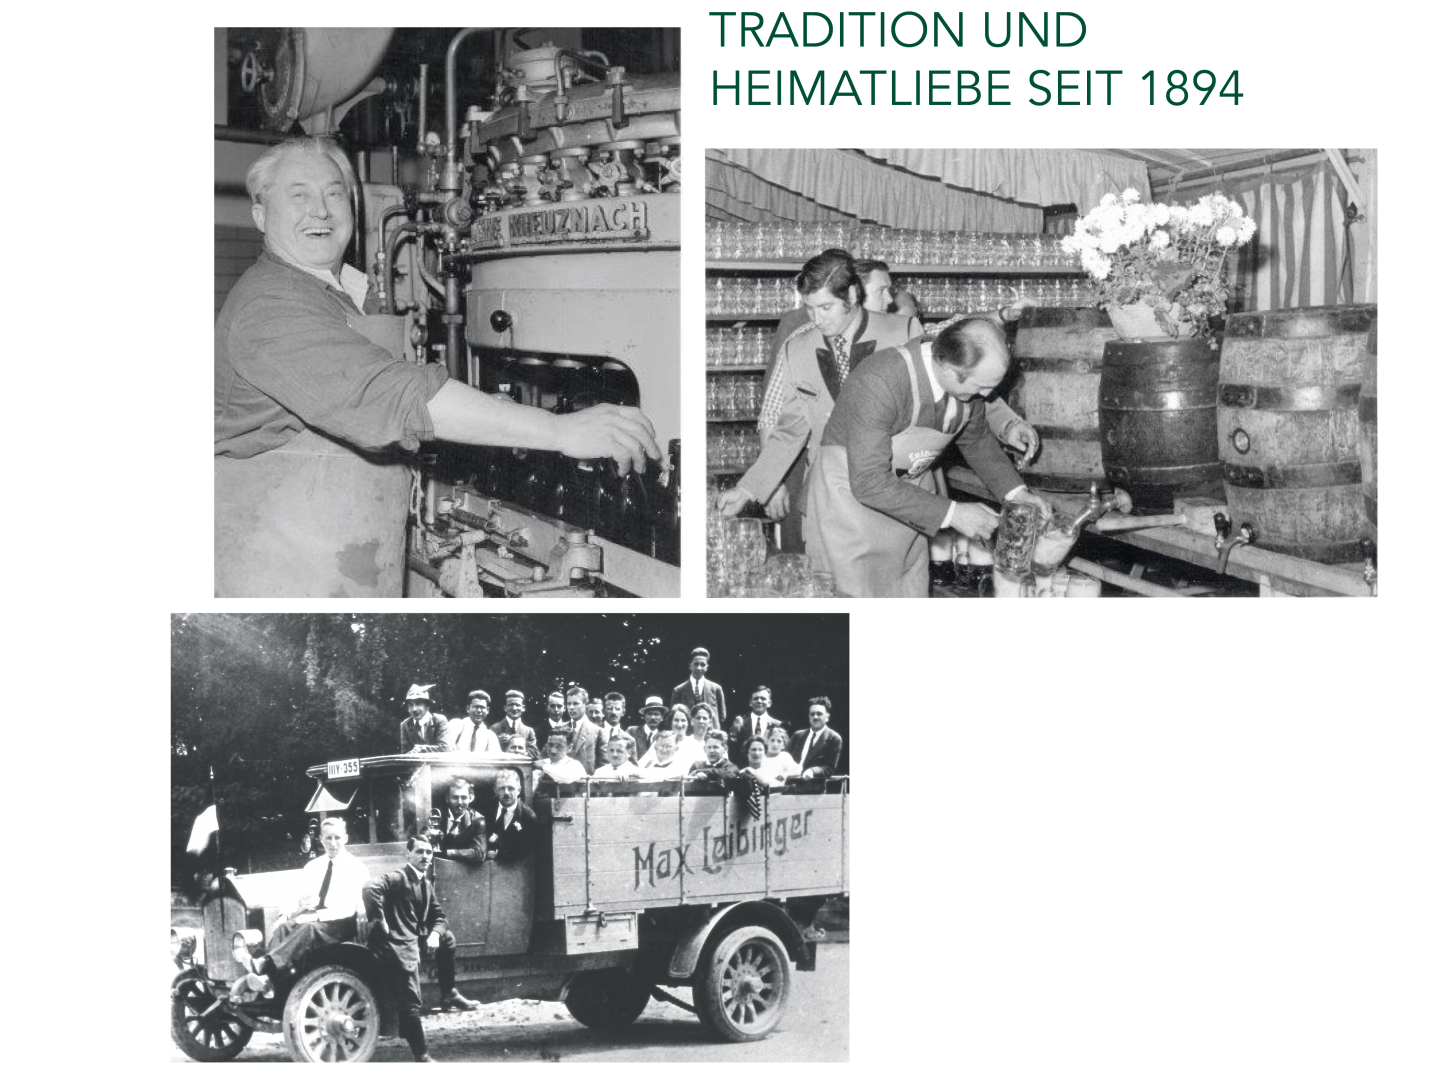 Geschichte Brauerei Max Leibinger GmbH